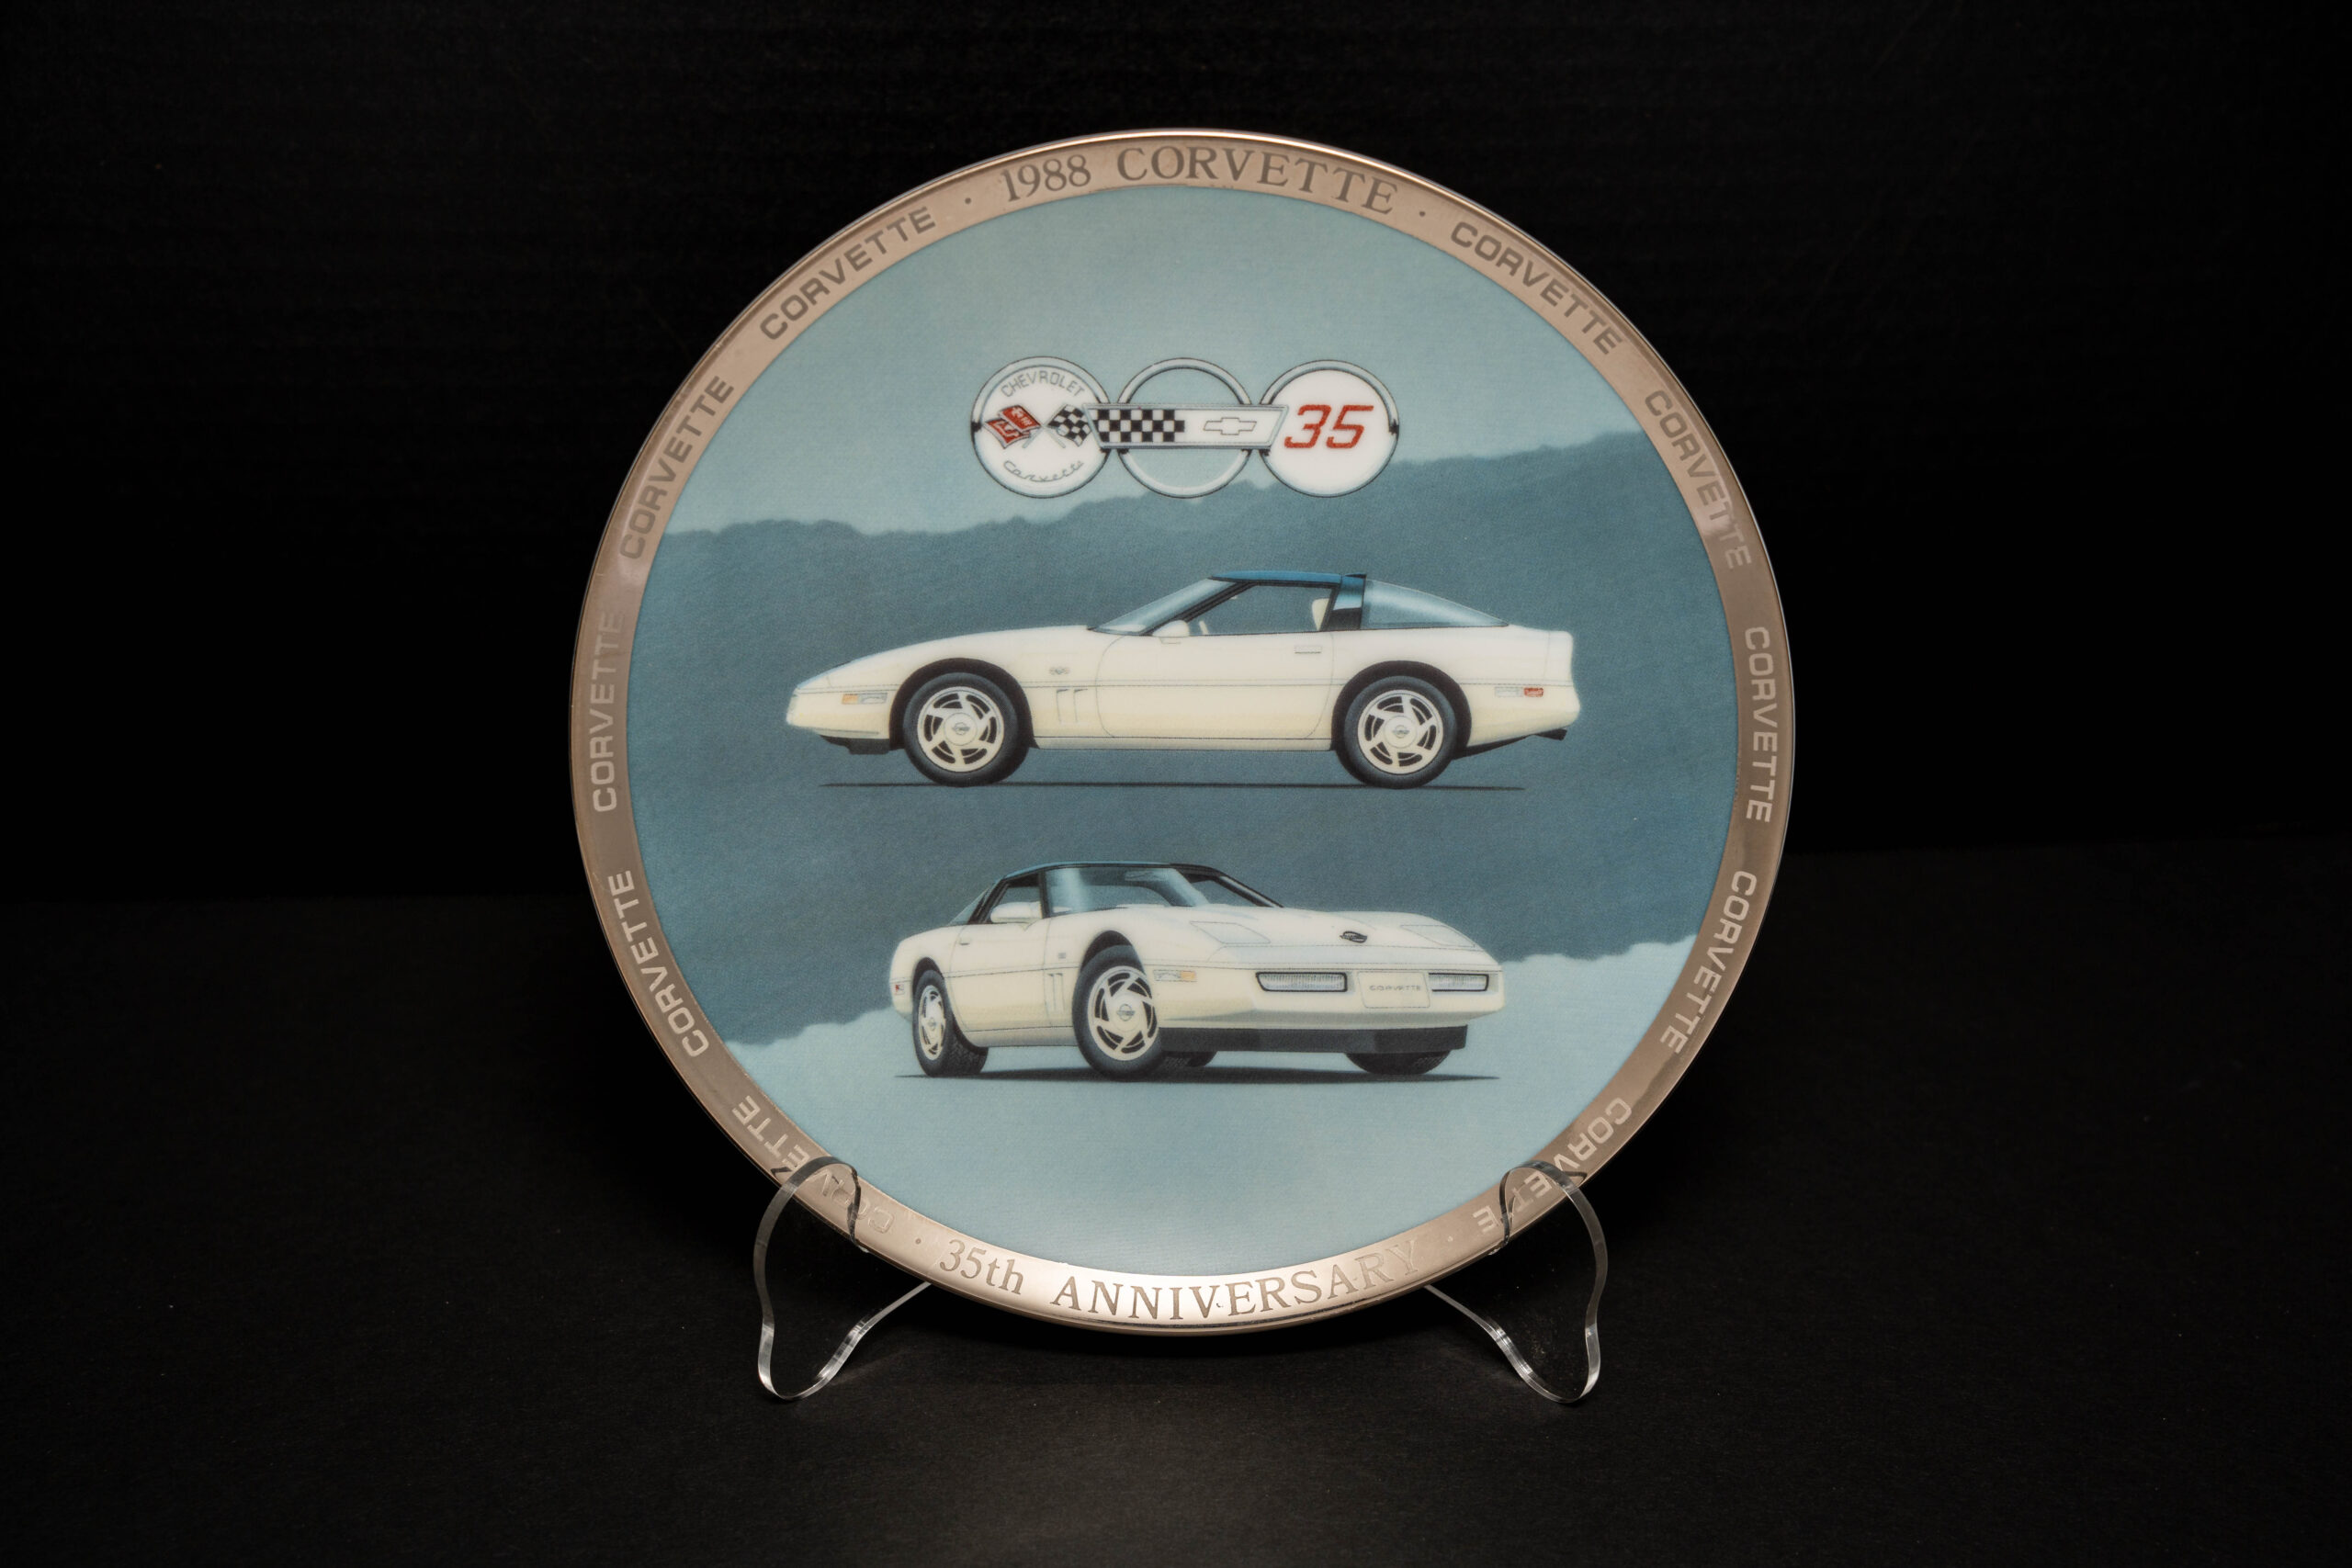 Corvette 35th Anniversary Commemorative Plate